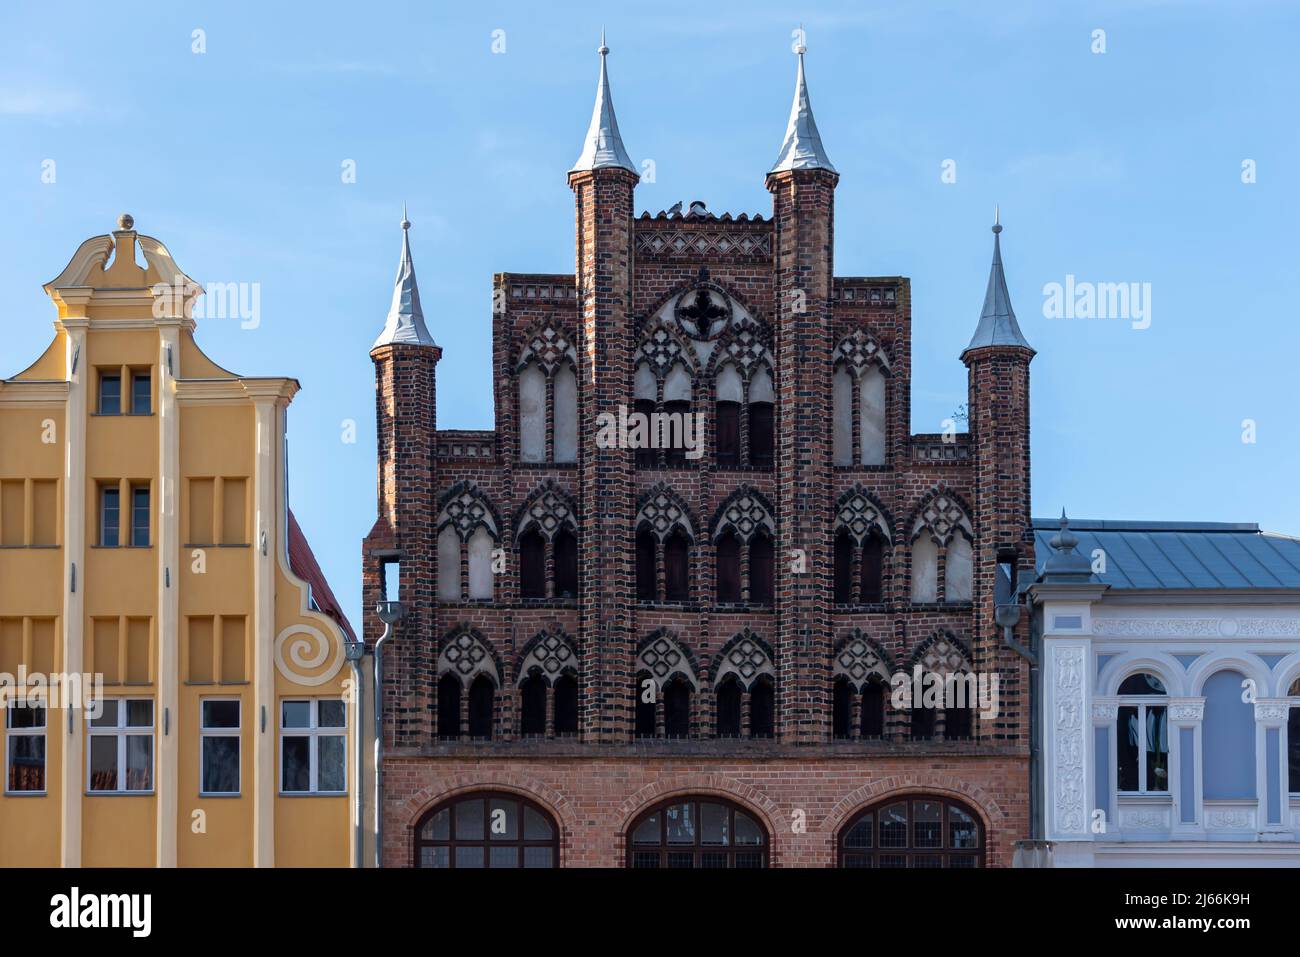 Wulflamanhaus, Alter Markt, Altstadt, Stralsund, Mecklenburg-Vorpommern, Allemagne Banque D'Images